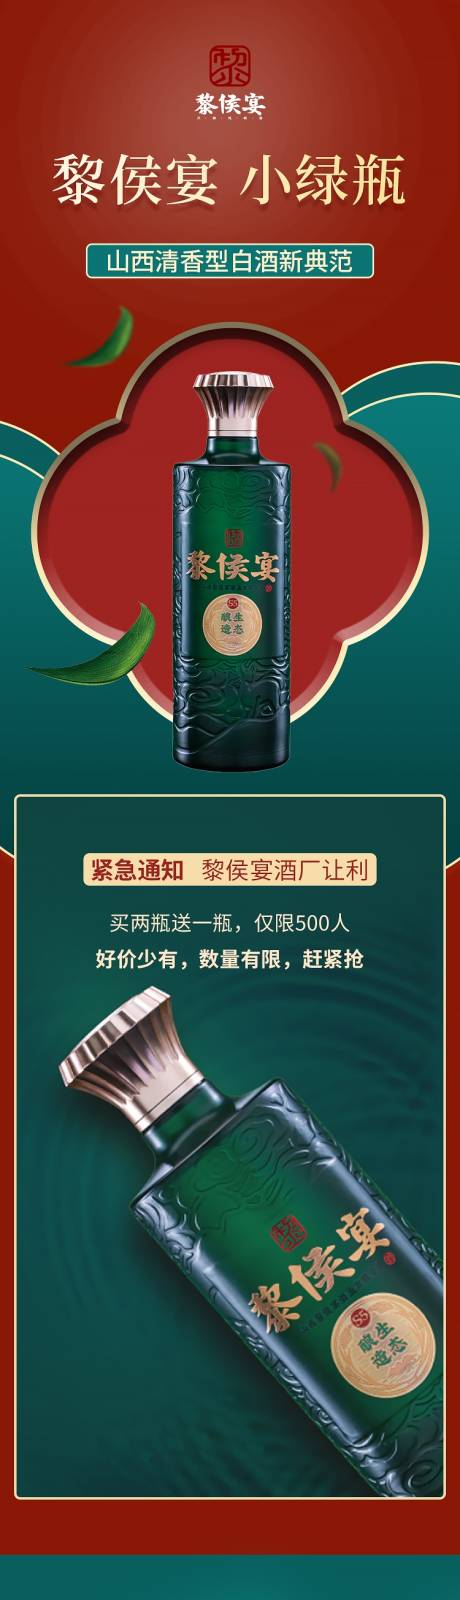 新中式白酒宣传推广长图落地页